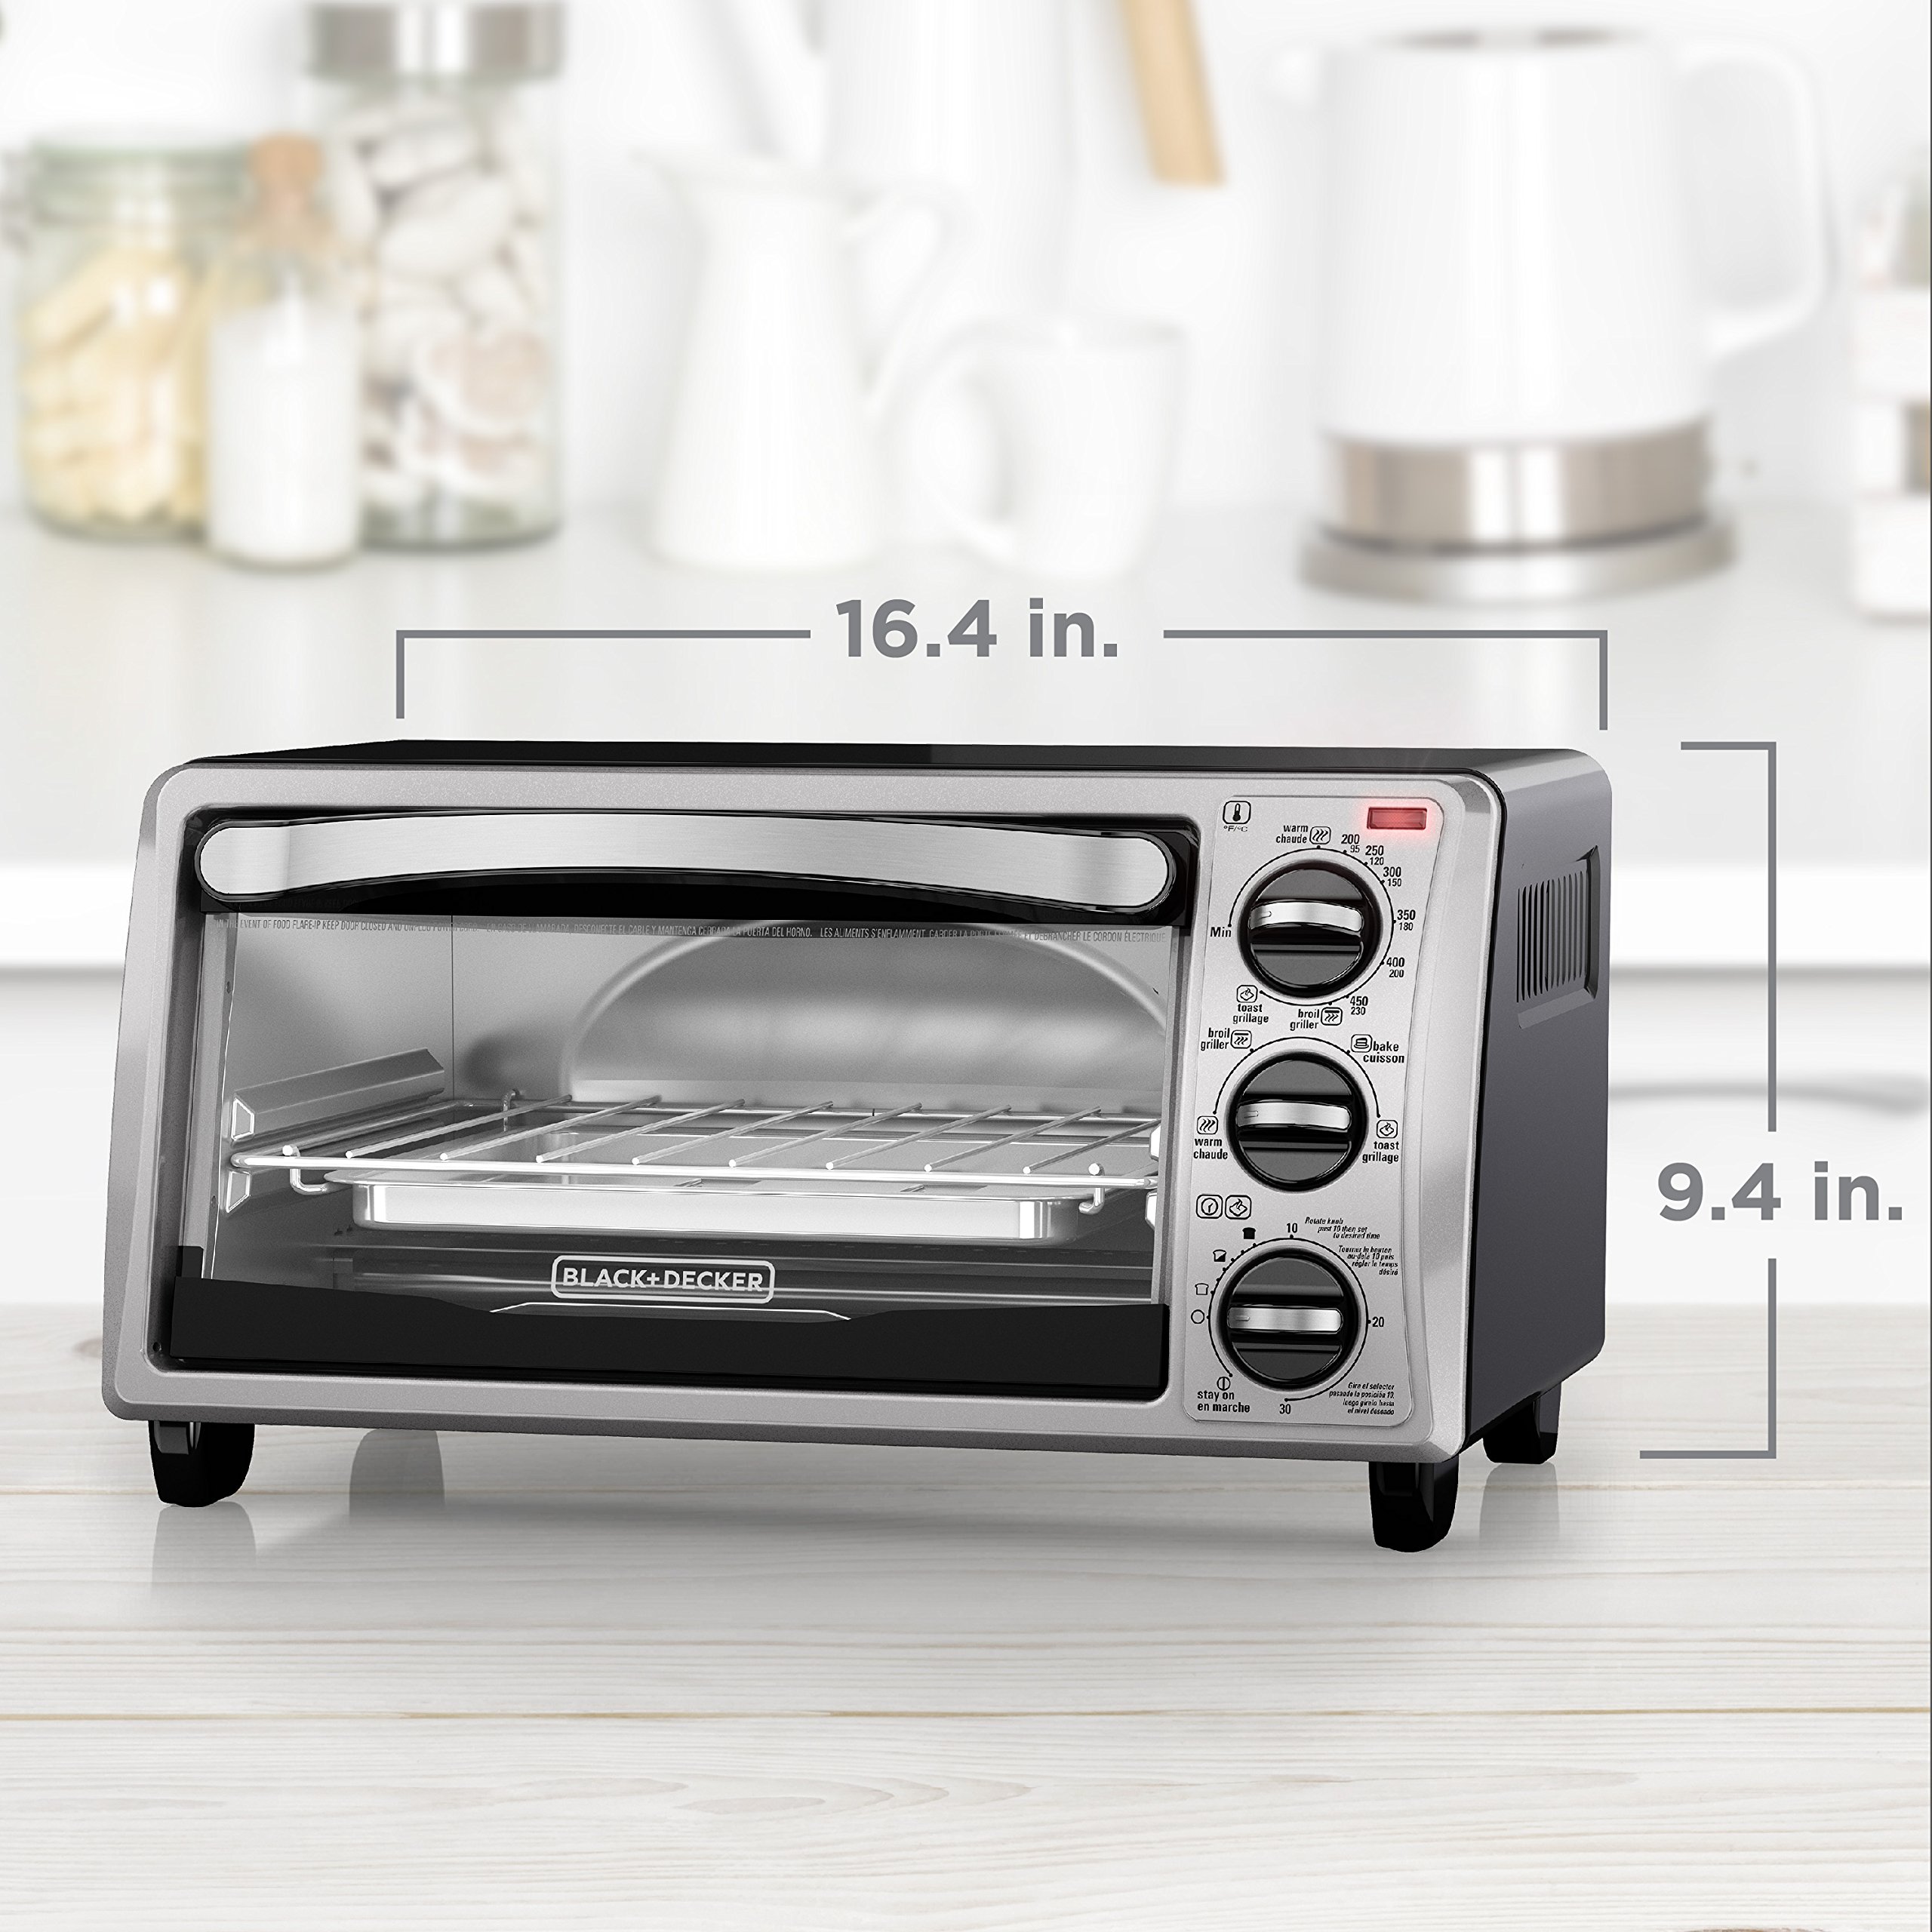 BLACK+DECKER 4-Slice EvenToast Toaster Oven, Bake, Broil, Toast, Keep Warm